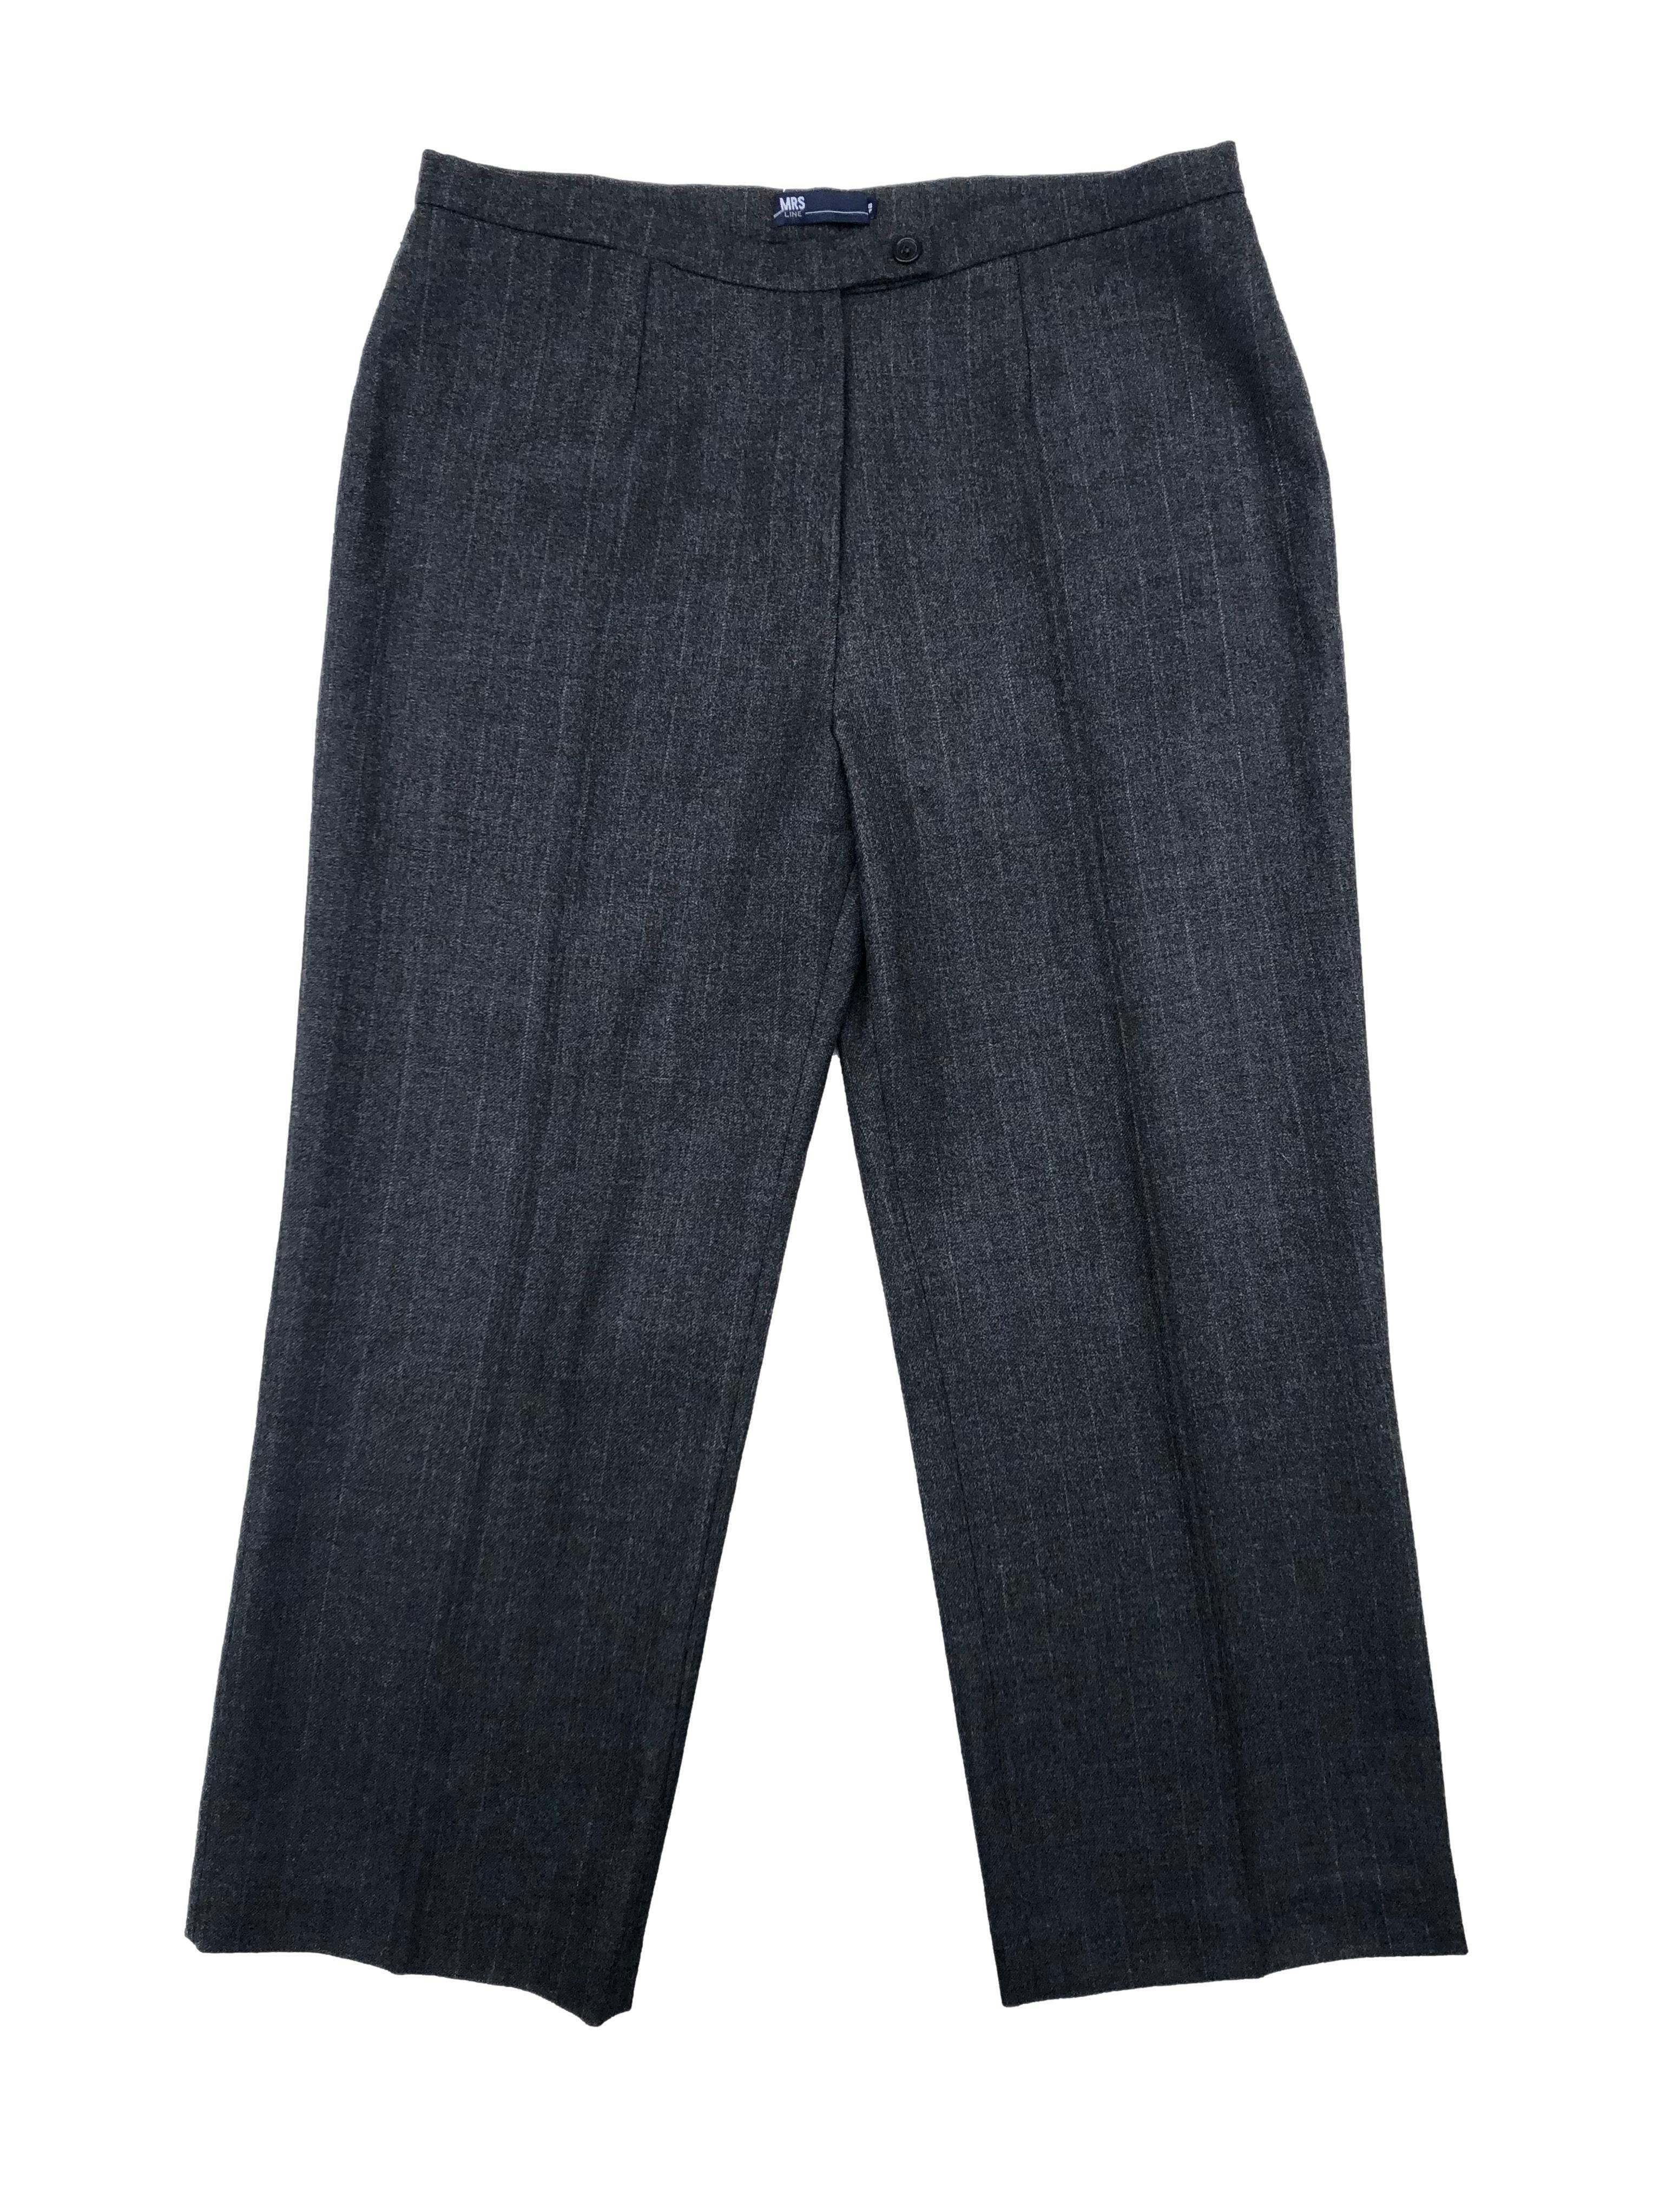 Pantalón sastre gris 100% lana, corte recto con pinzas. Cintura 94cm, Tiro 32cm, Largo 102cm.